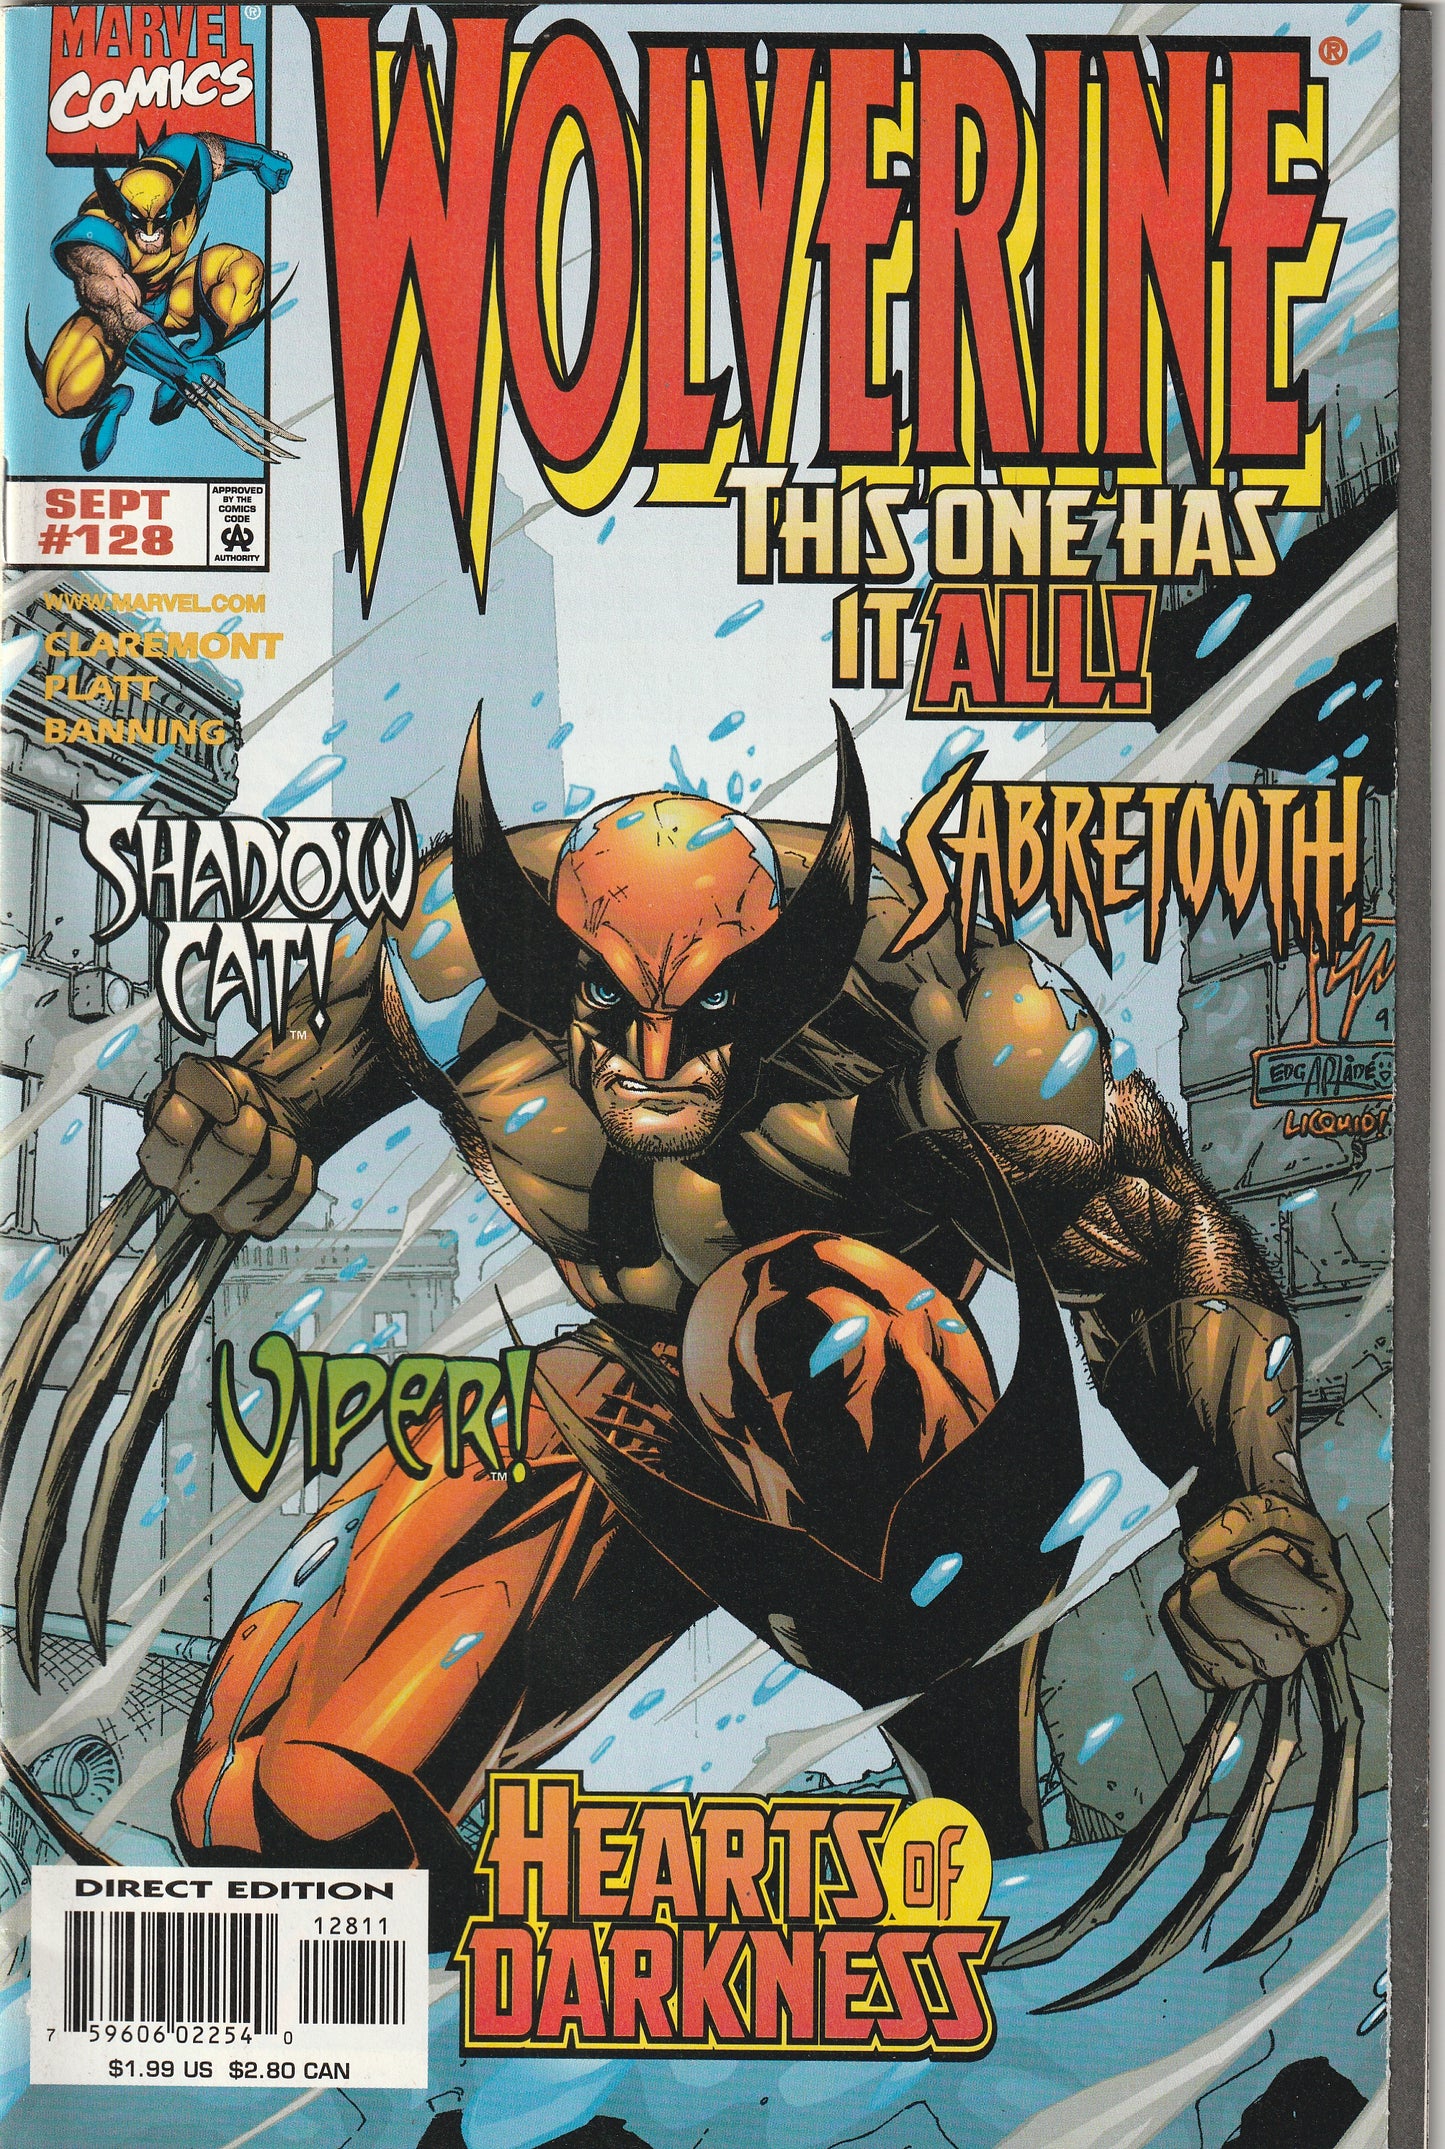 Wolverine #128 (1998)